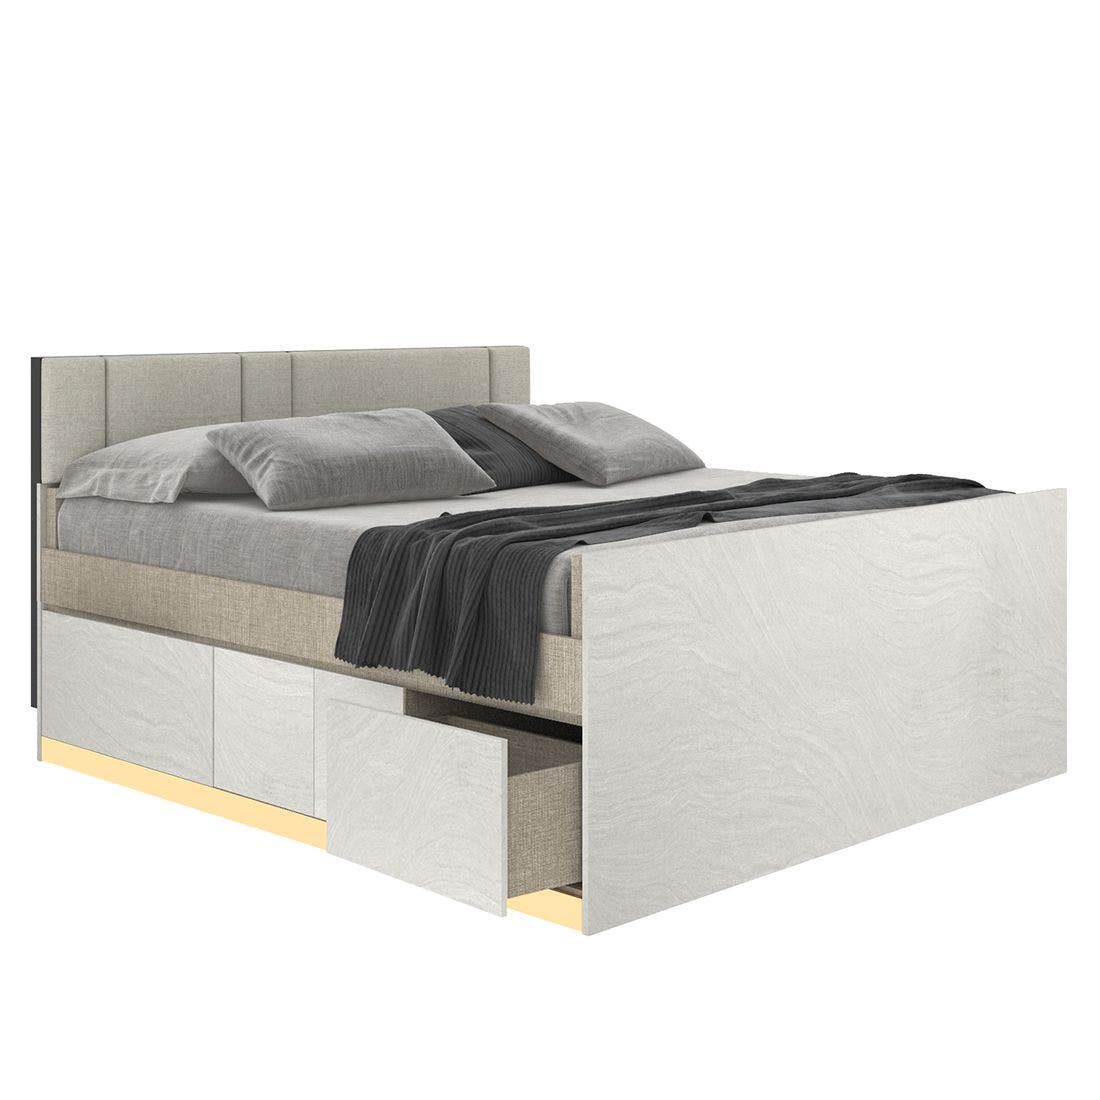 19203907-blisz-furniture-bedroom-furniture-beds-06